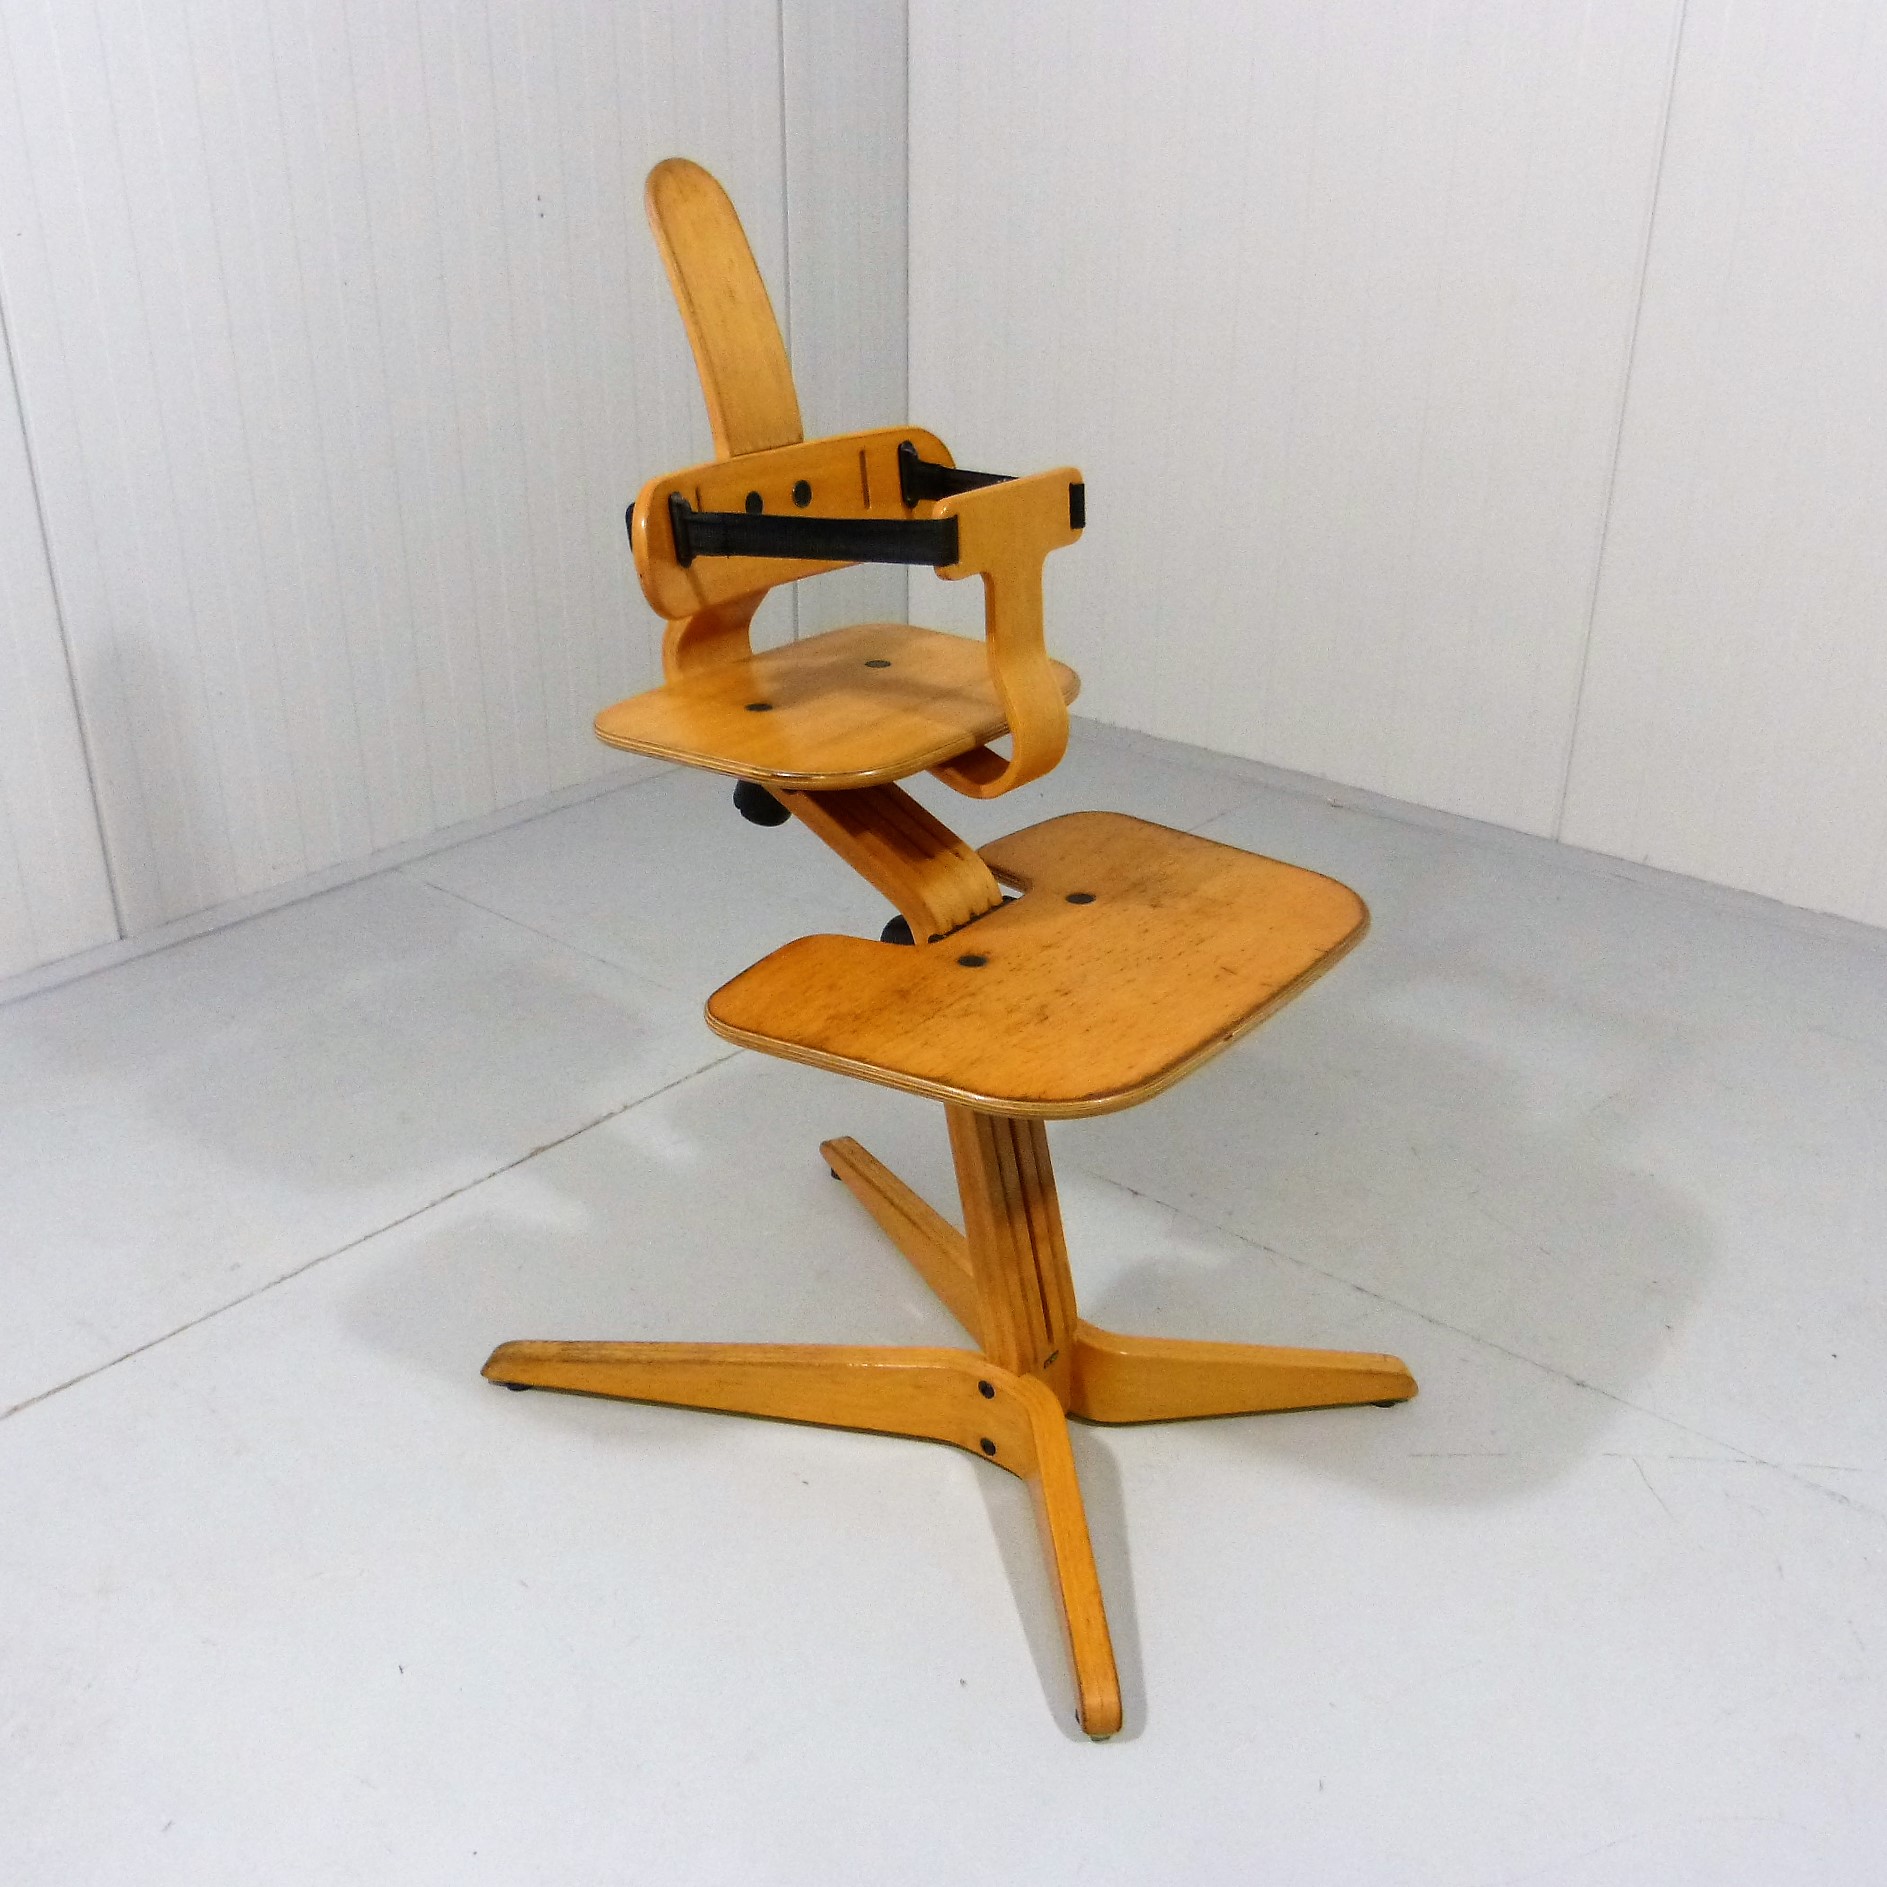 Stokke chair Sitti by Peter Opsvik, 1993 - Tussenin